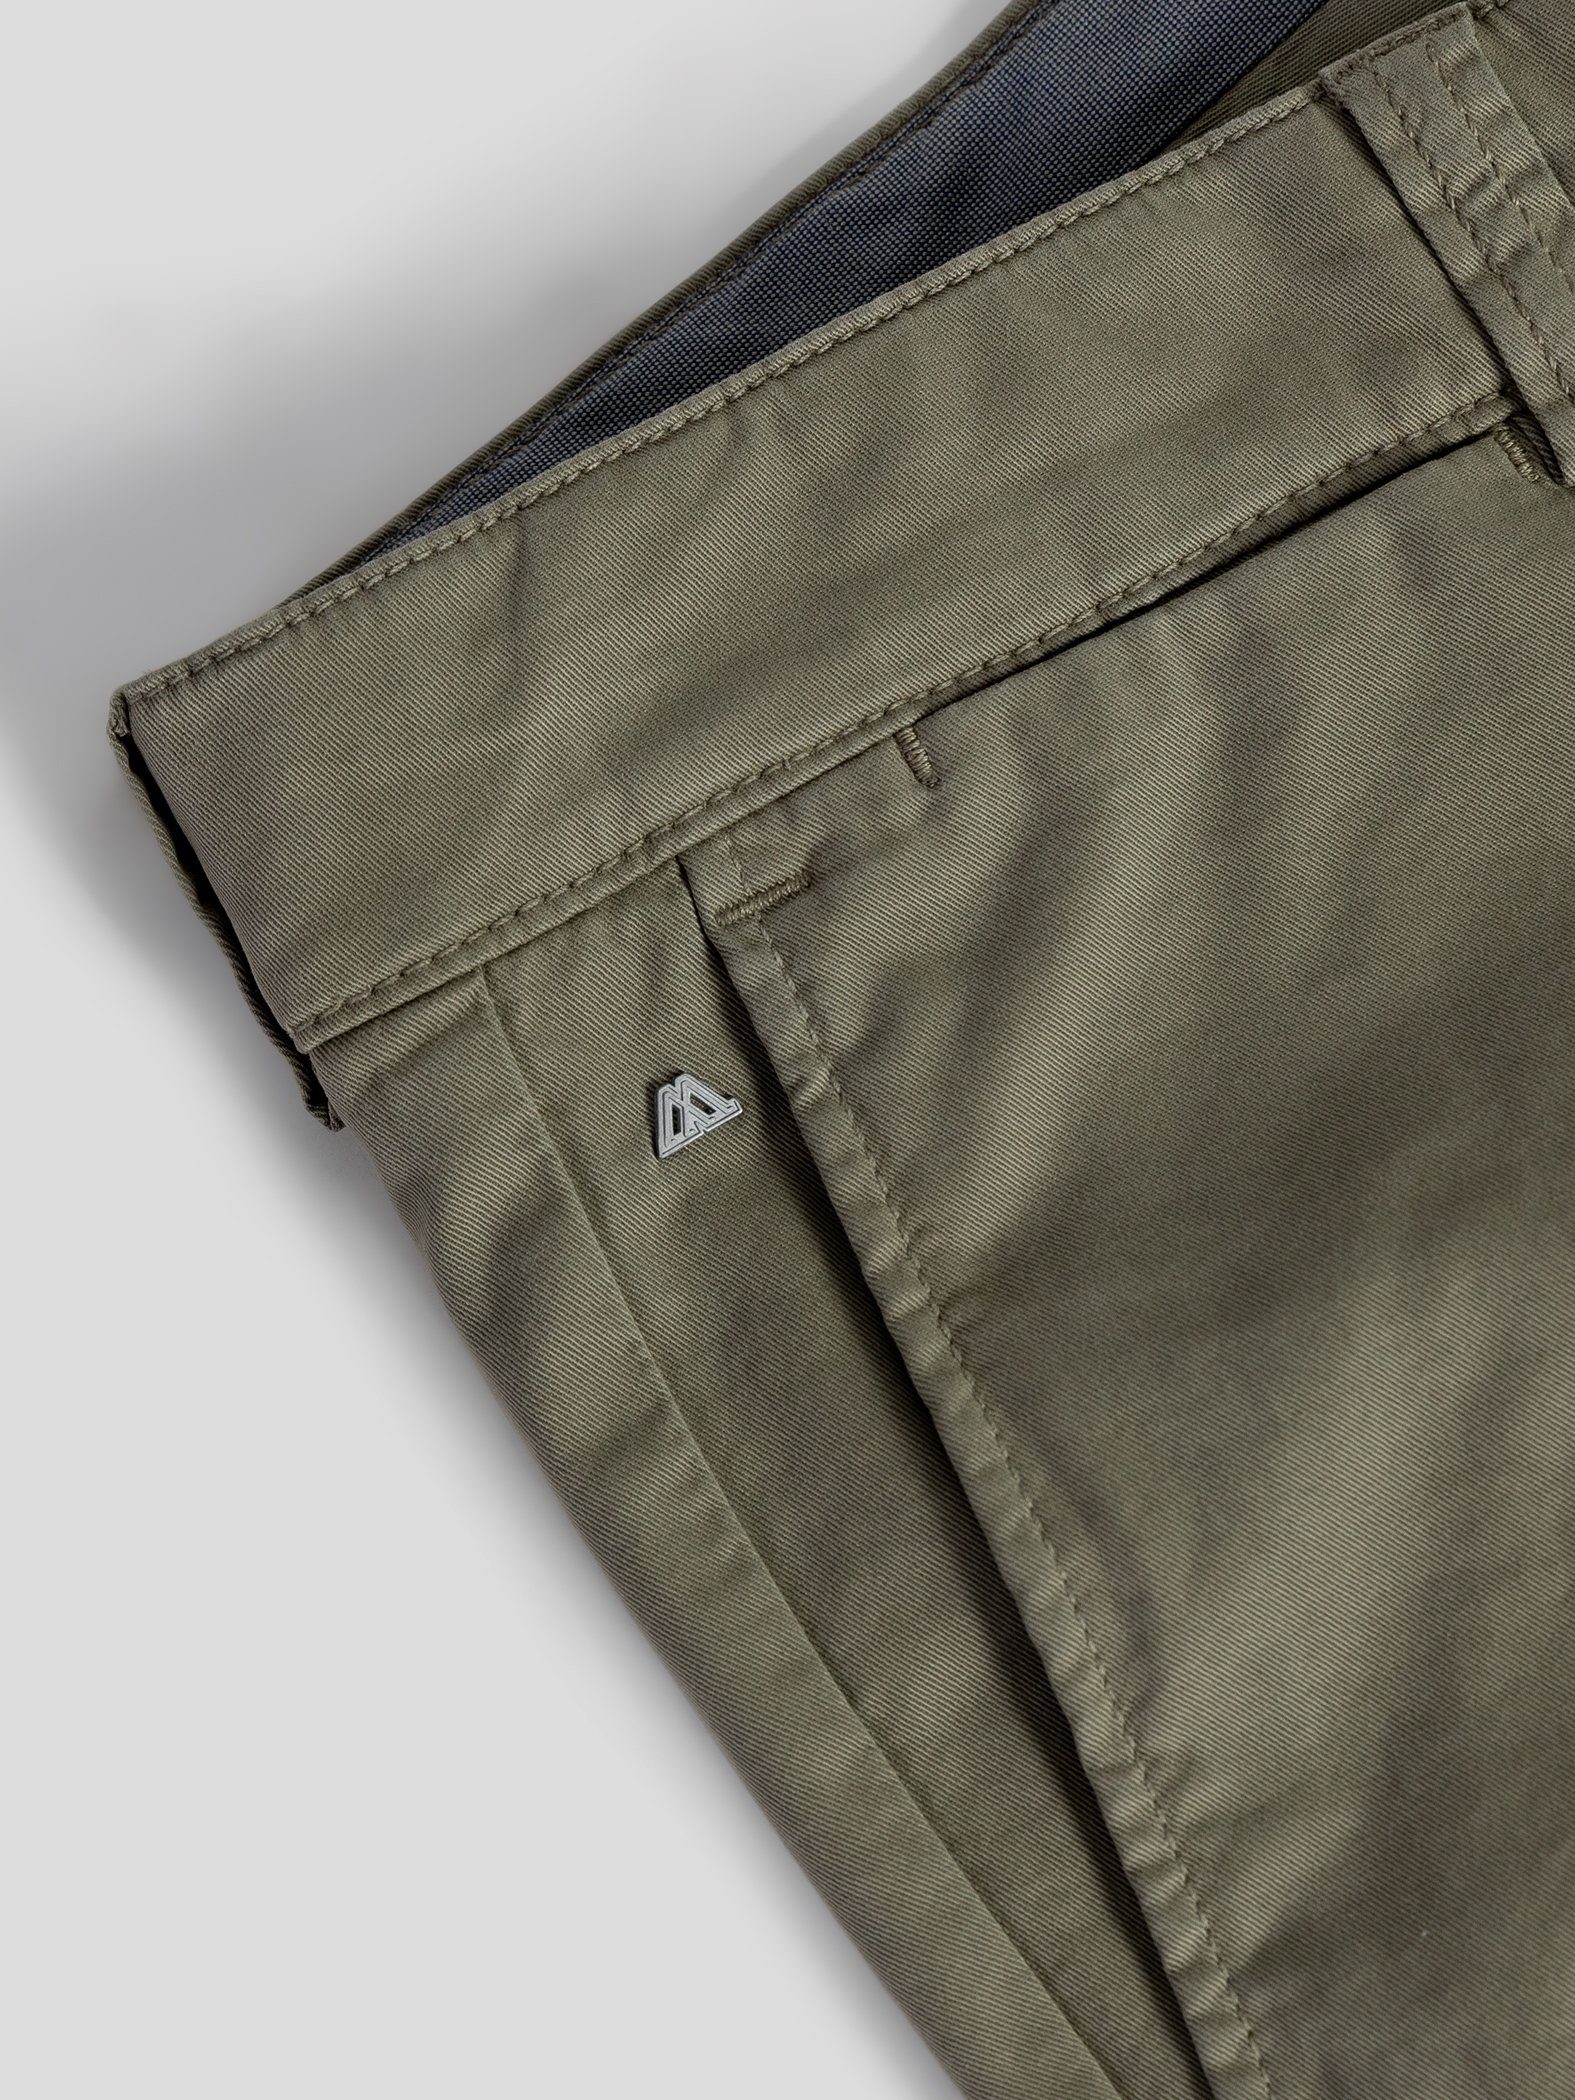 mit TwoMates elastischem Shorts Bund, GOTS-zertifiziert olivgrün Shorts Farbauswahl,